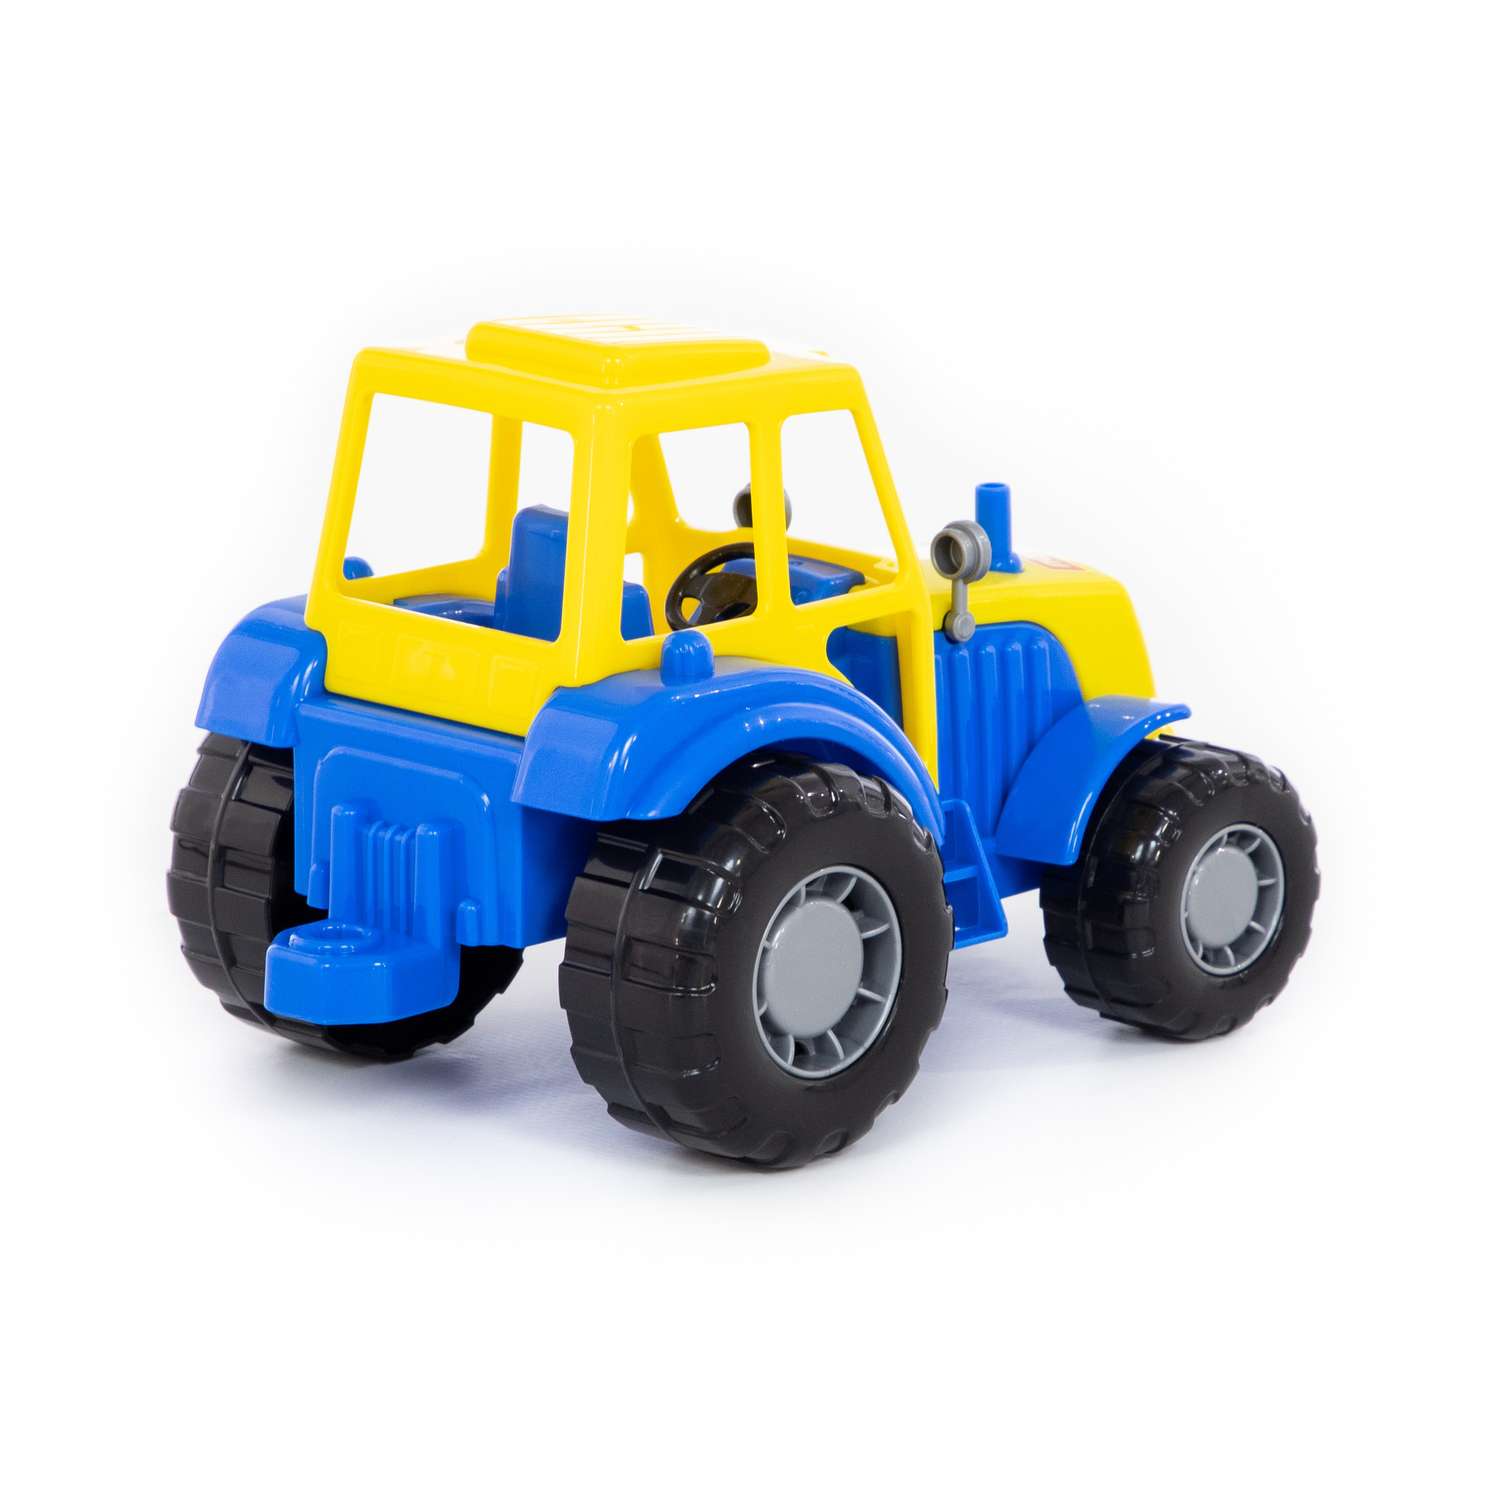 Трактор Полесье Мастер синий с желтым 35240/3 - фото 2